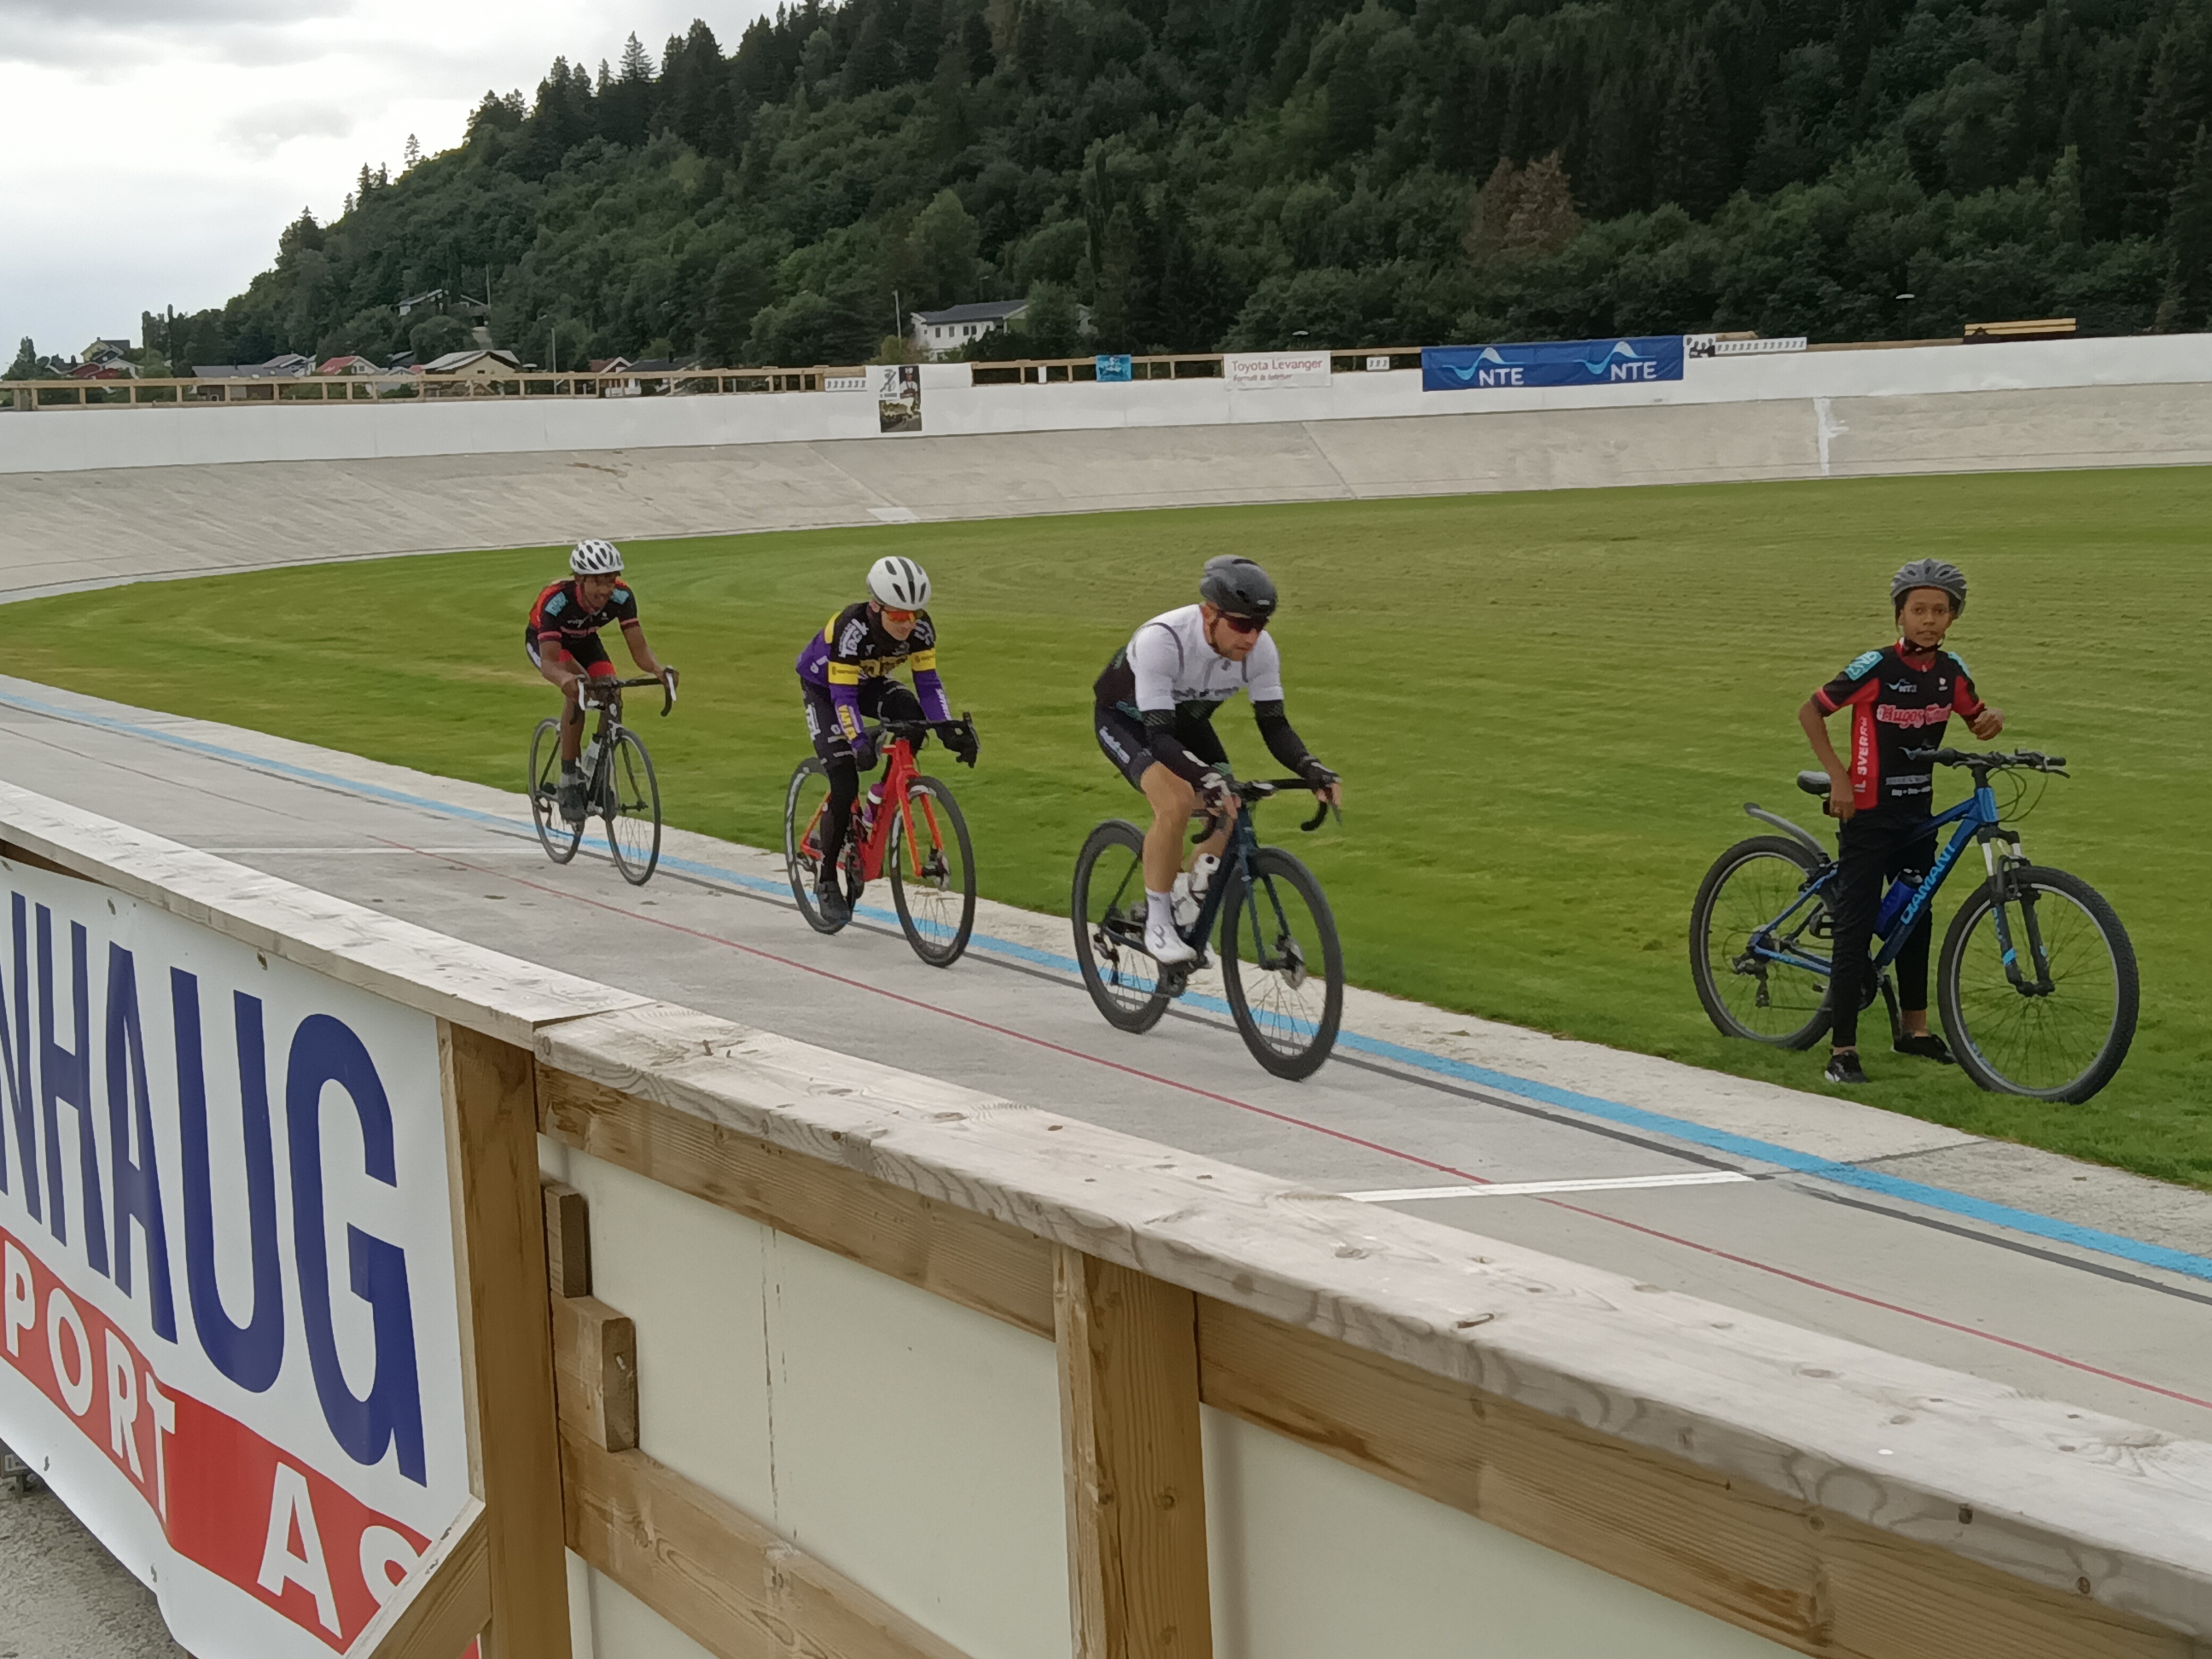 Velodromen i Levanger er åpen for egenorganisert trening hele døgnet, og brukes flittig av regionens ivrige syklister. Foto: Inge Johansen, IL Sverre